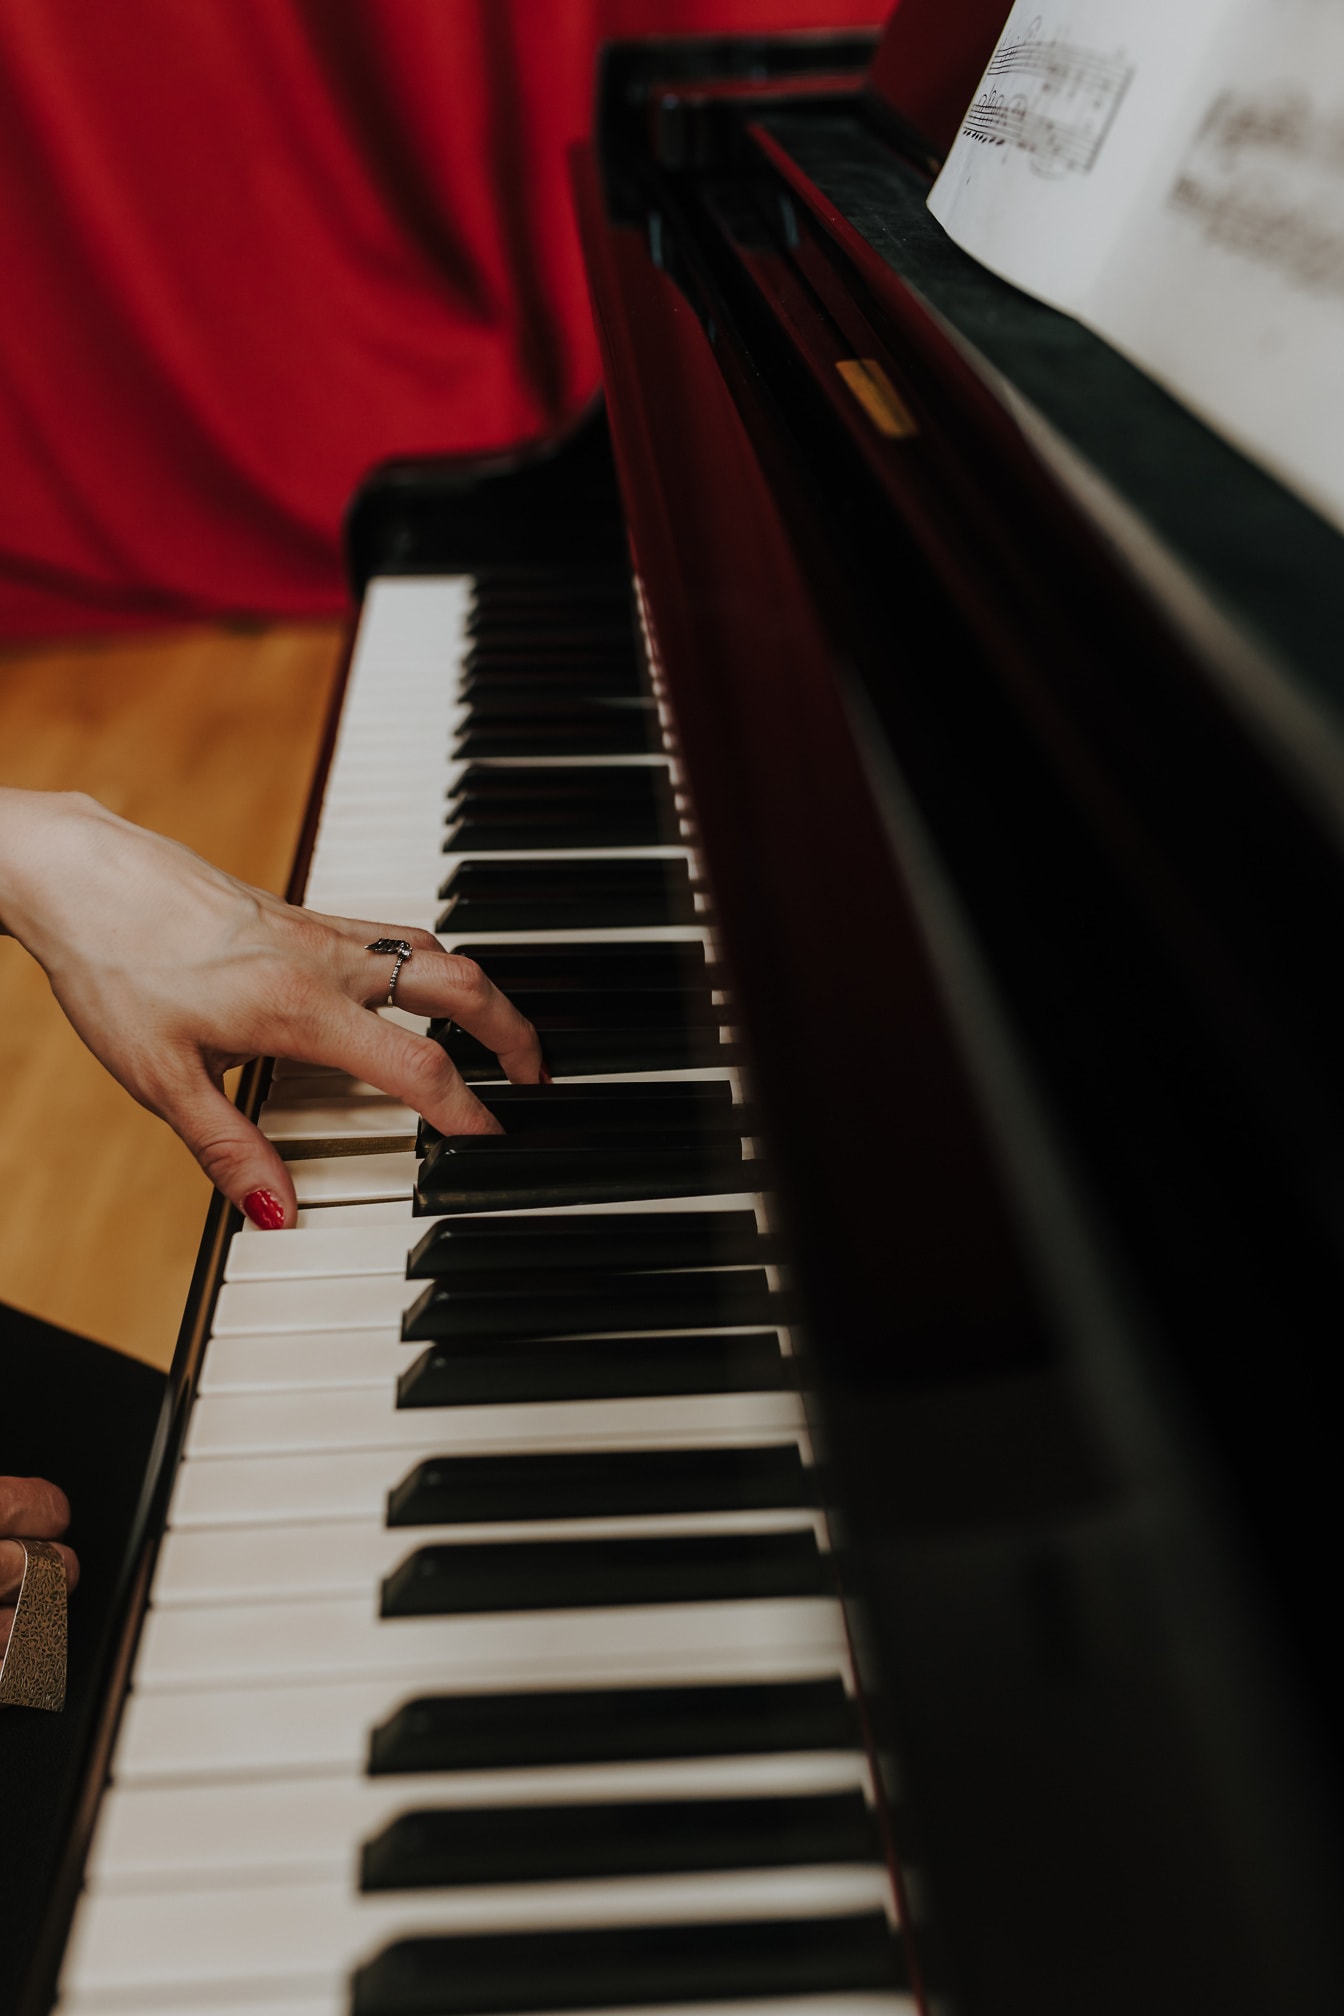 Krupni plan sa zlatnim prstenom i crvenim lakom za nokte koji svira klavir